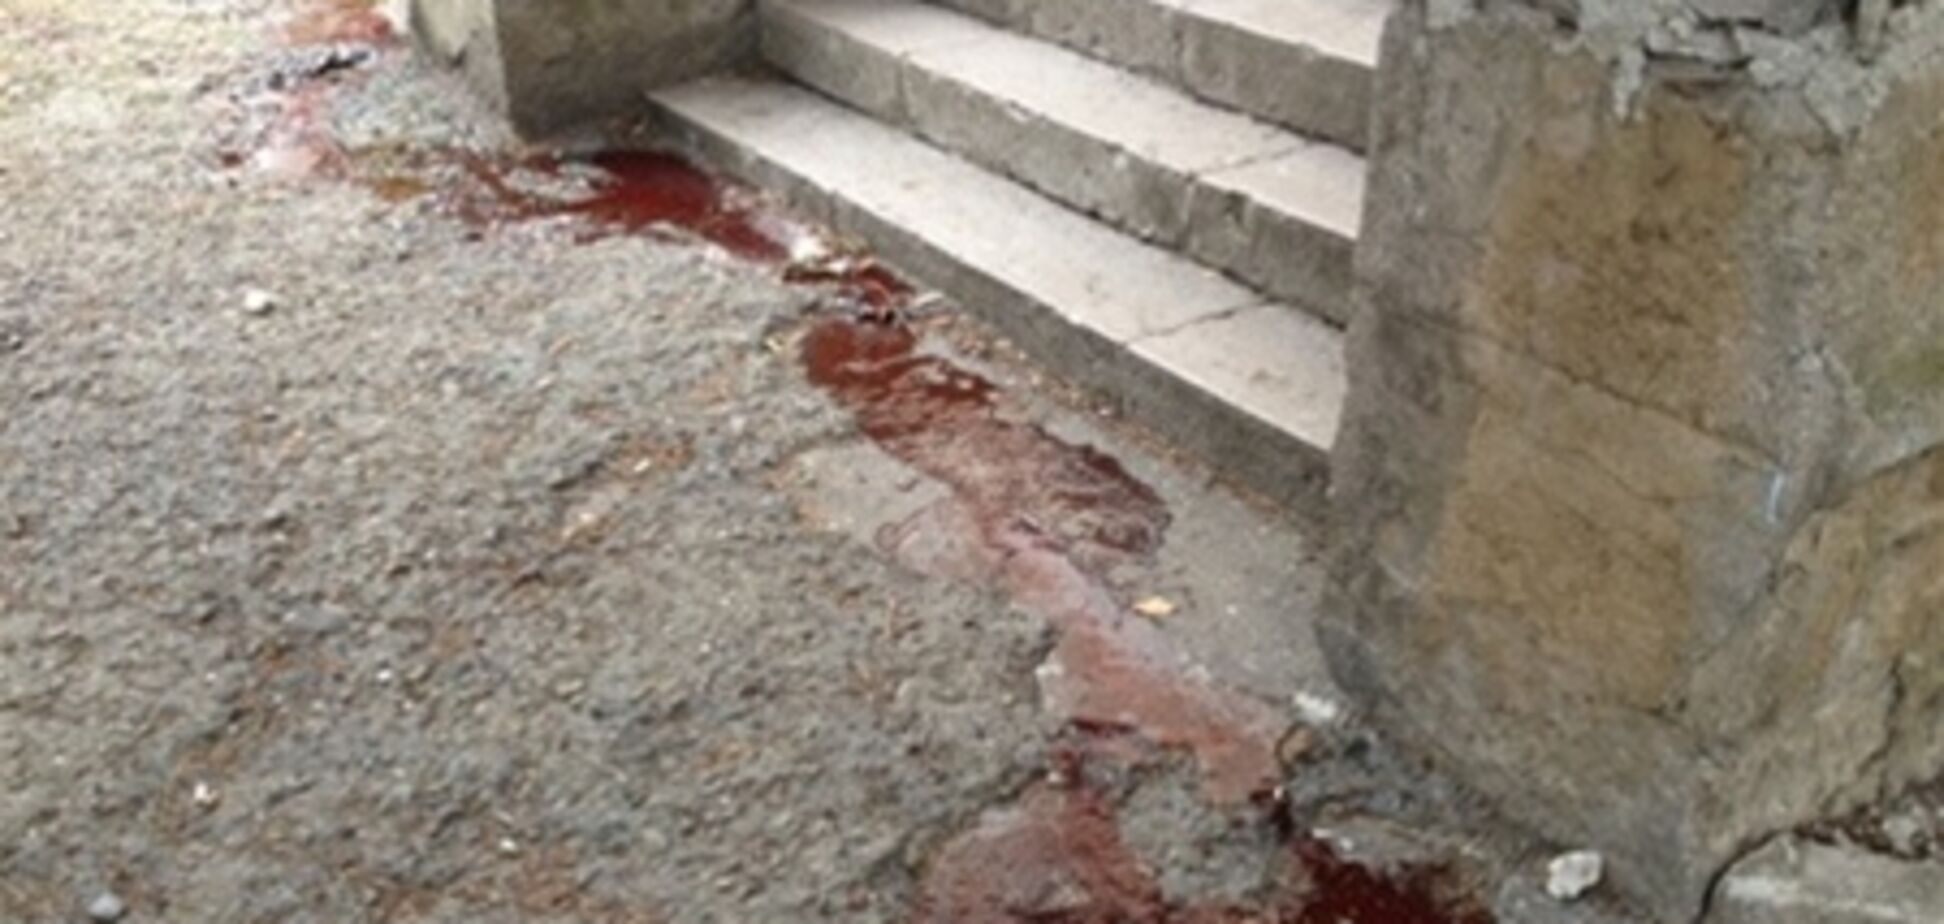 Трагедия в санатории 'Юность': смывать кровь заставили детей